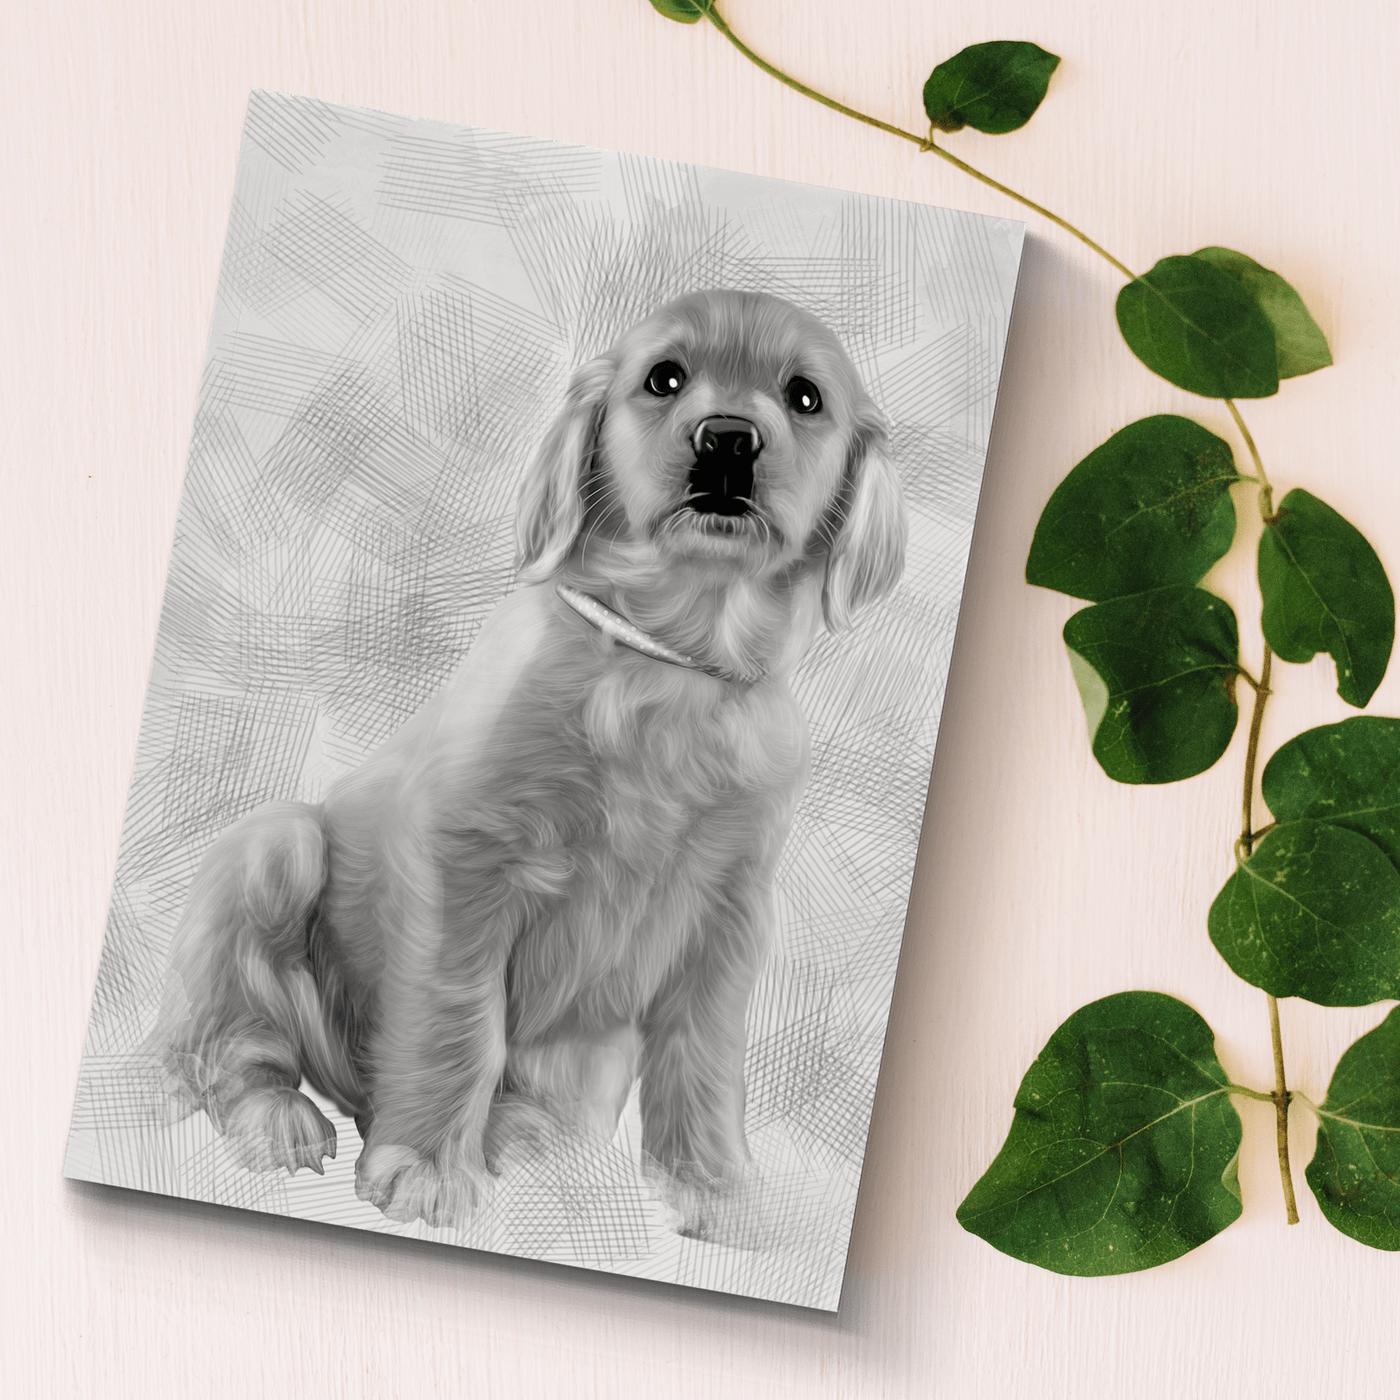 pencil pet portrait of an adorable dog